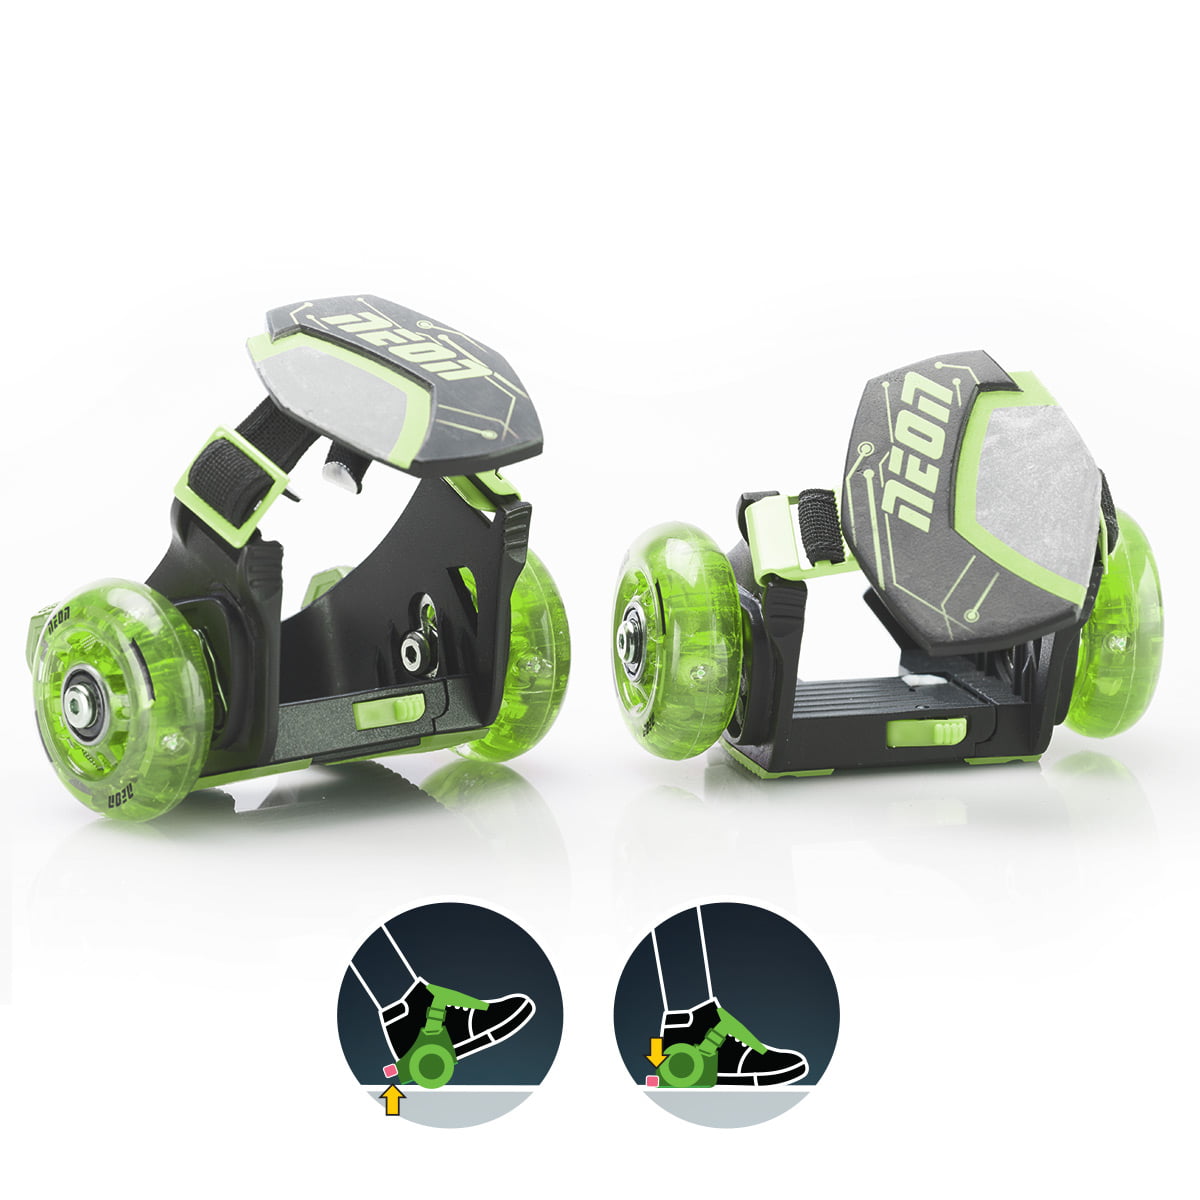 Yvolution Neon Street Roller Green Clip & Go 101236 Heel Skates for sale online 